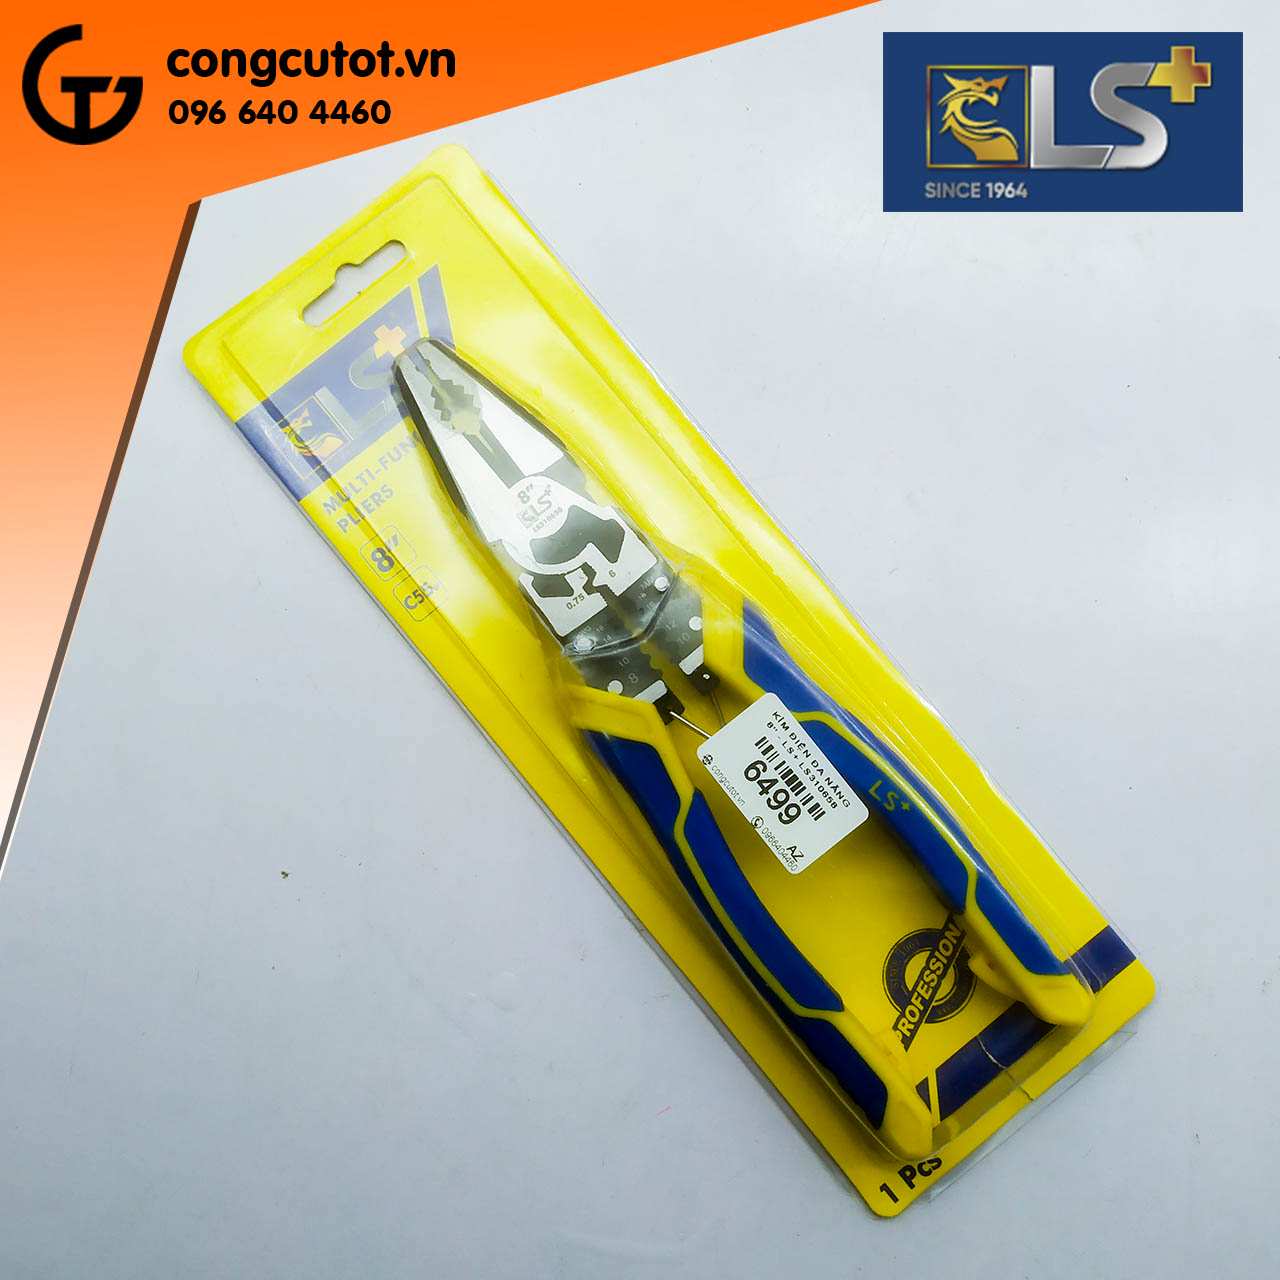 Kìm điện đan năng LS+ LS310658 kích thước 8 inch